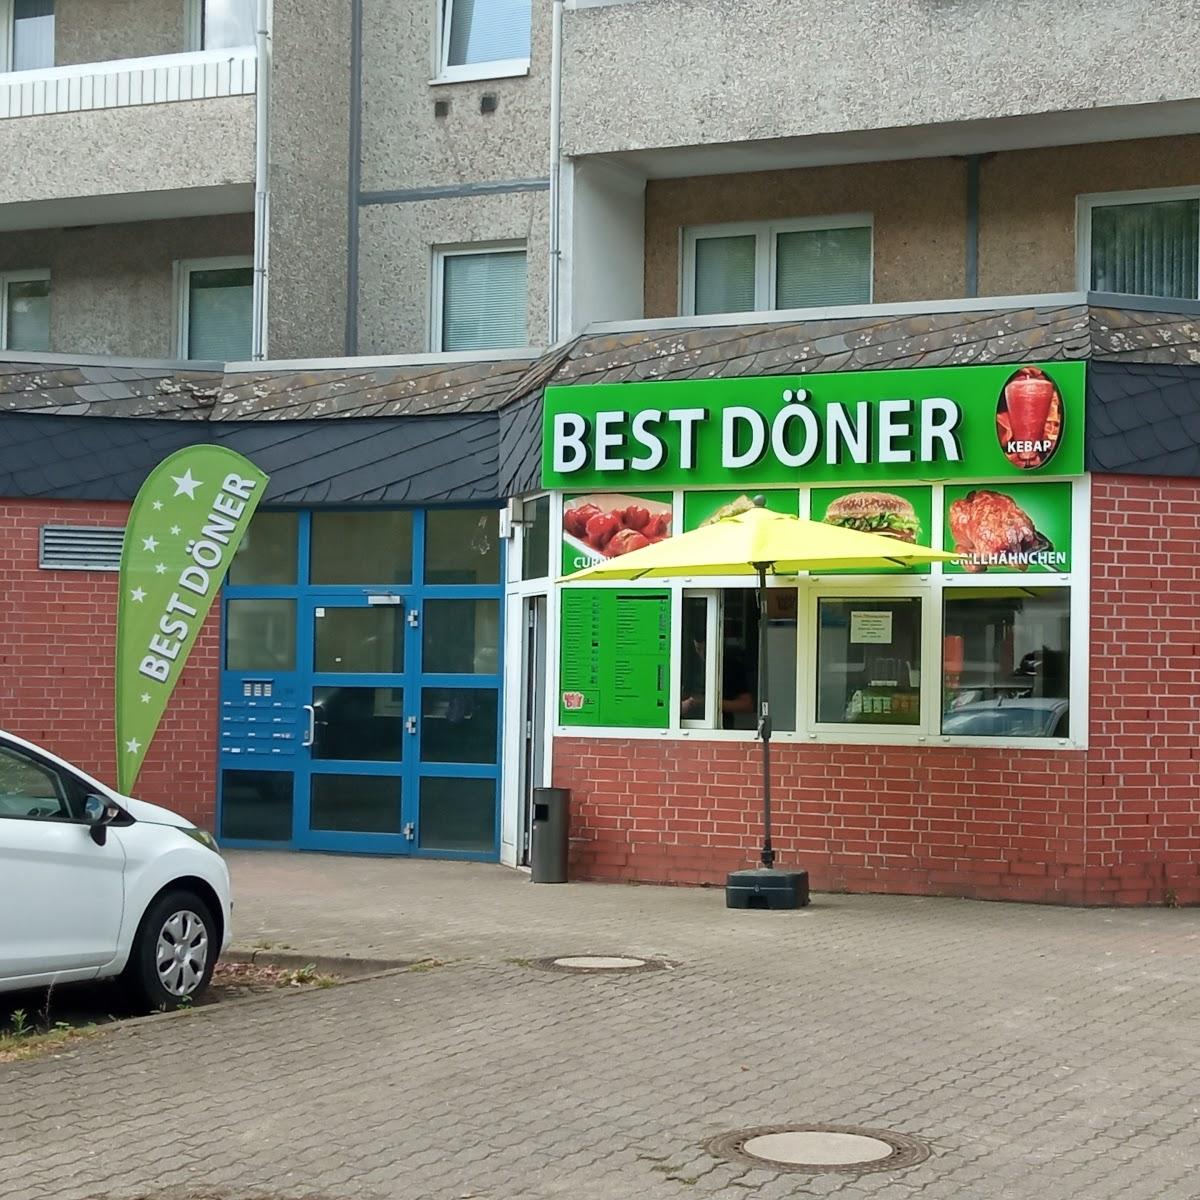 Restaurant "Best Döner Kebap" in Bernau bei Berlin